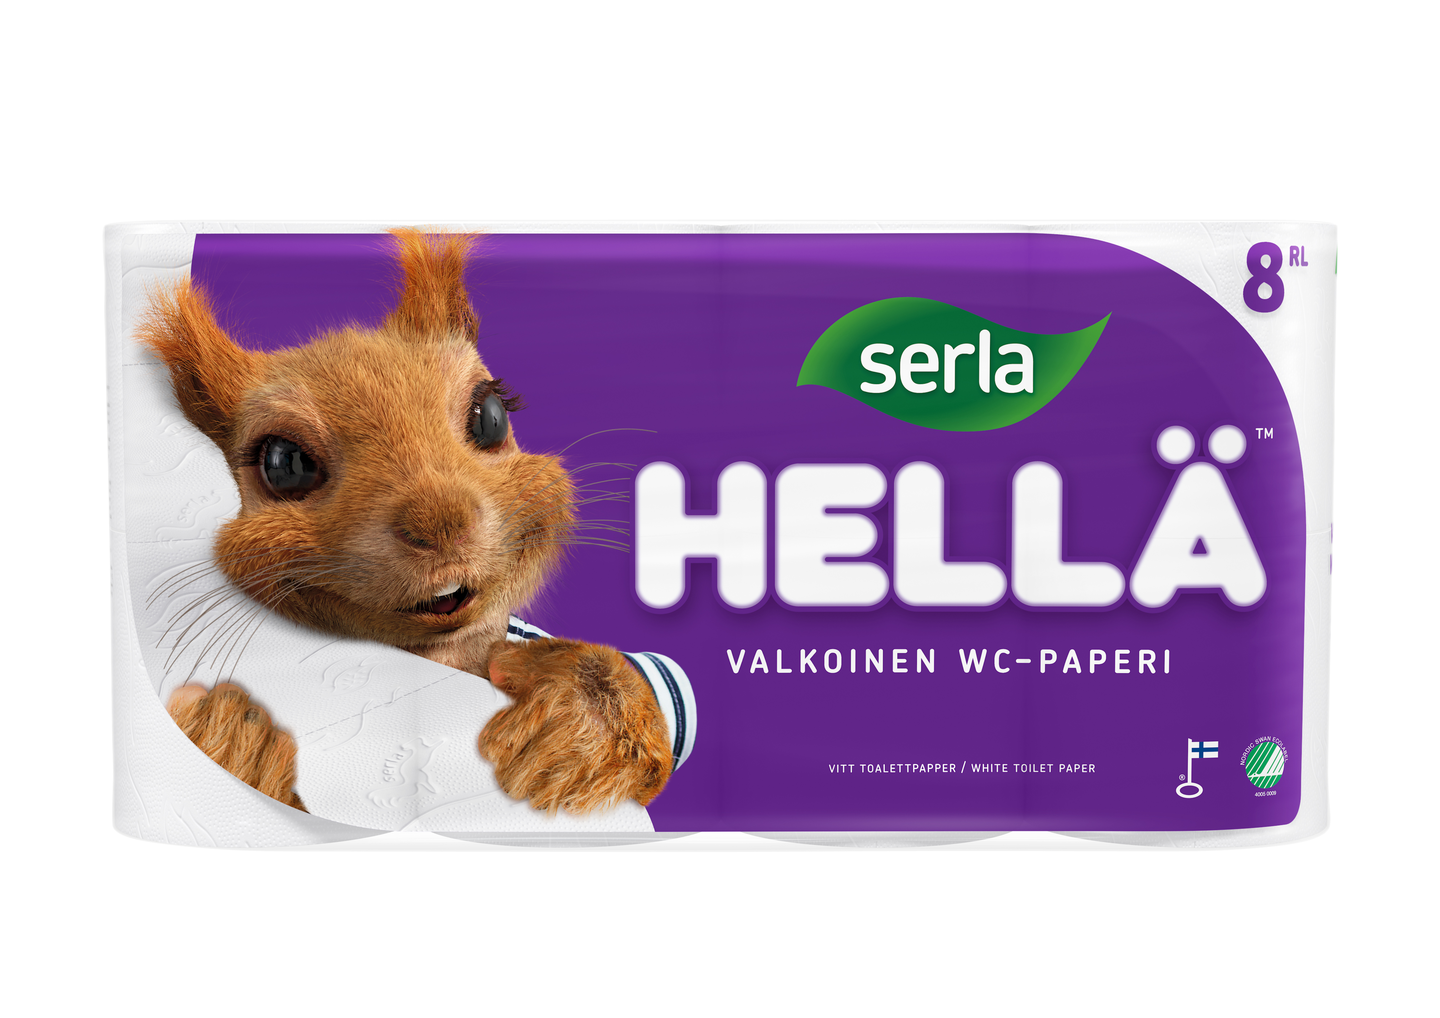 Serla Hellä wc-paperi 8 rl valkoinen